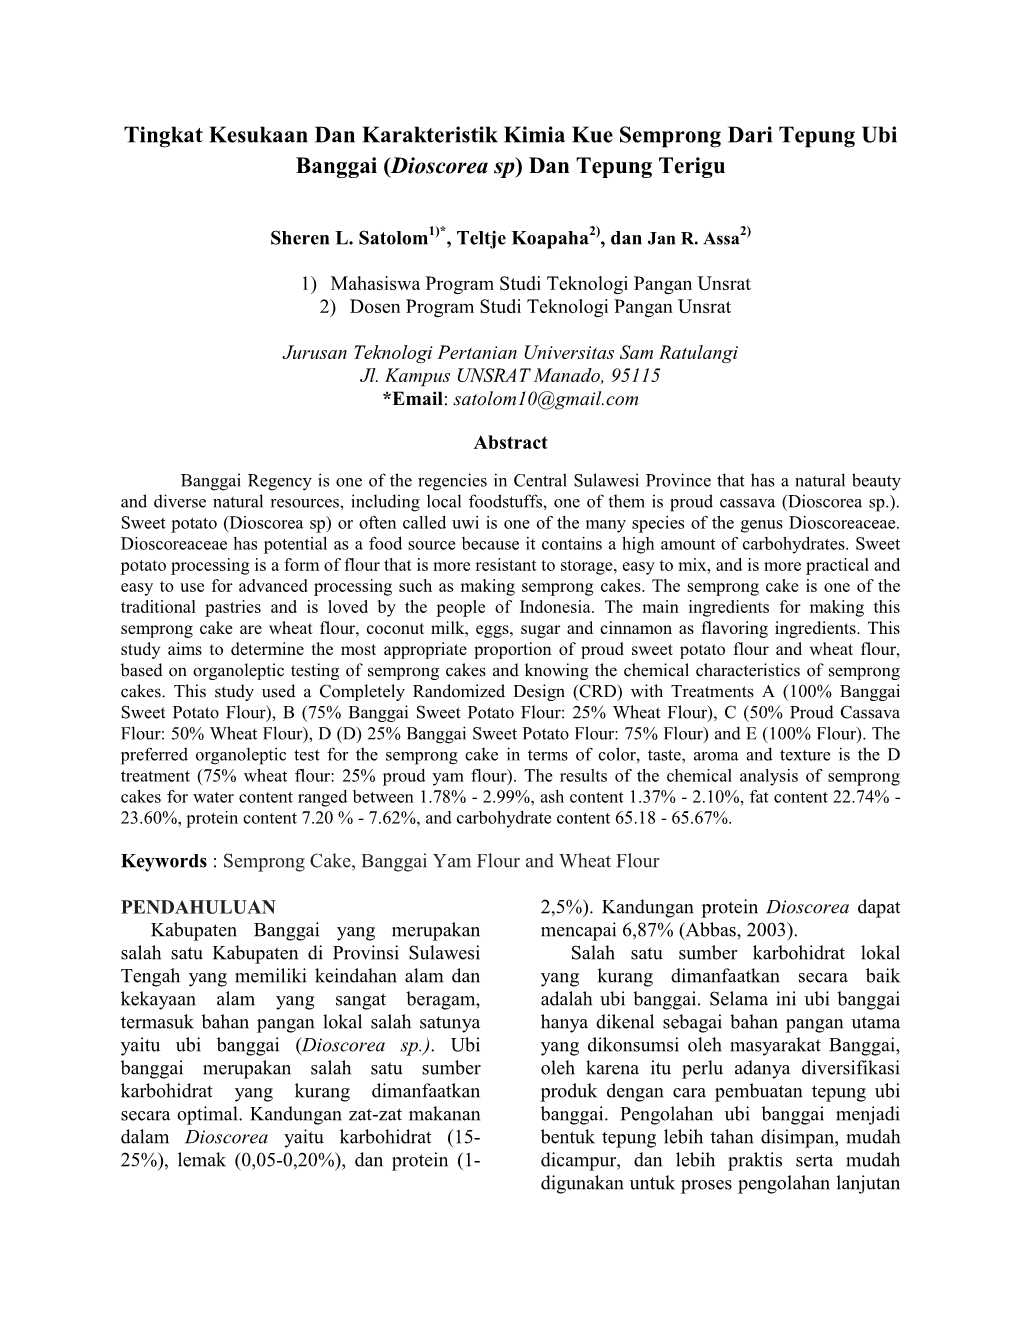 Tingkat Kesukaan Dan Karakteristik Kimia Kue Semprong Dari Tepung Ubi Banggai (Dioscorea Sp) Dan Tepung Terigu